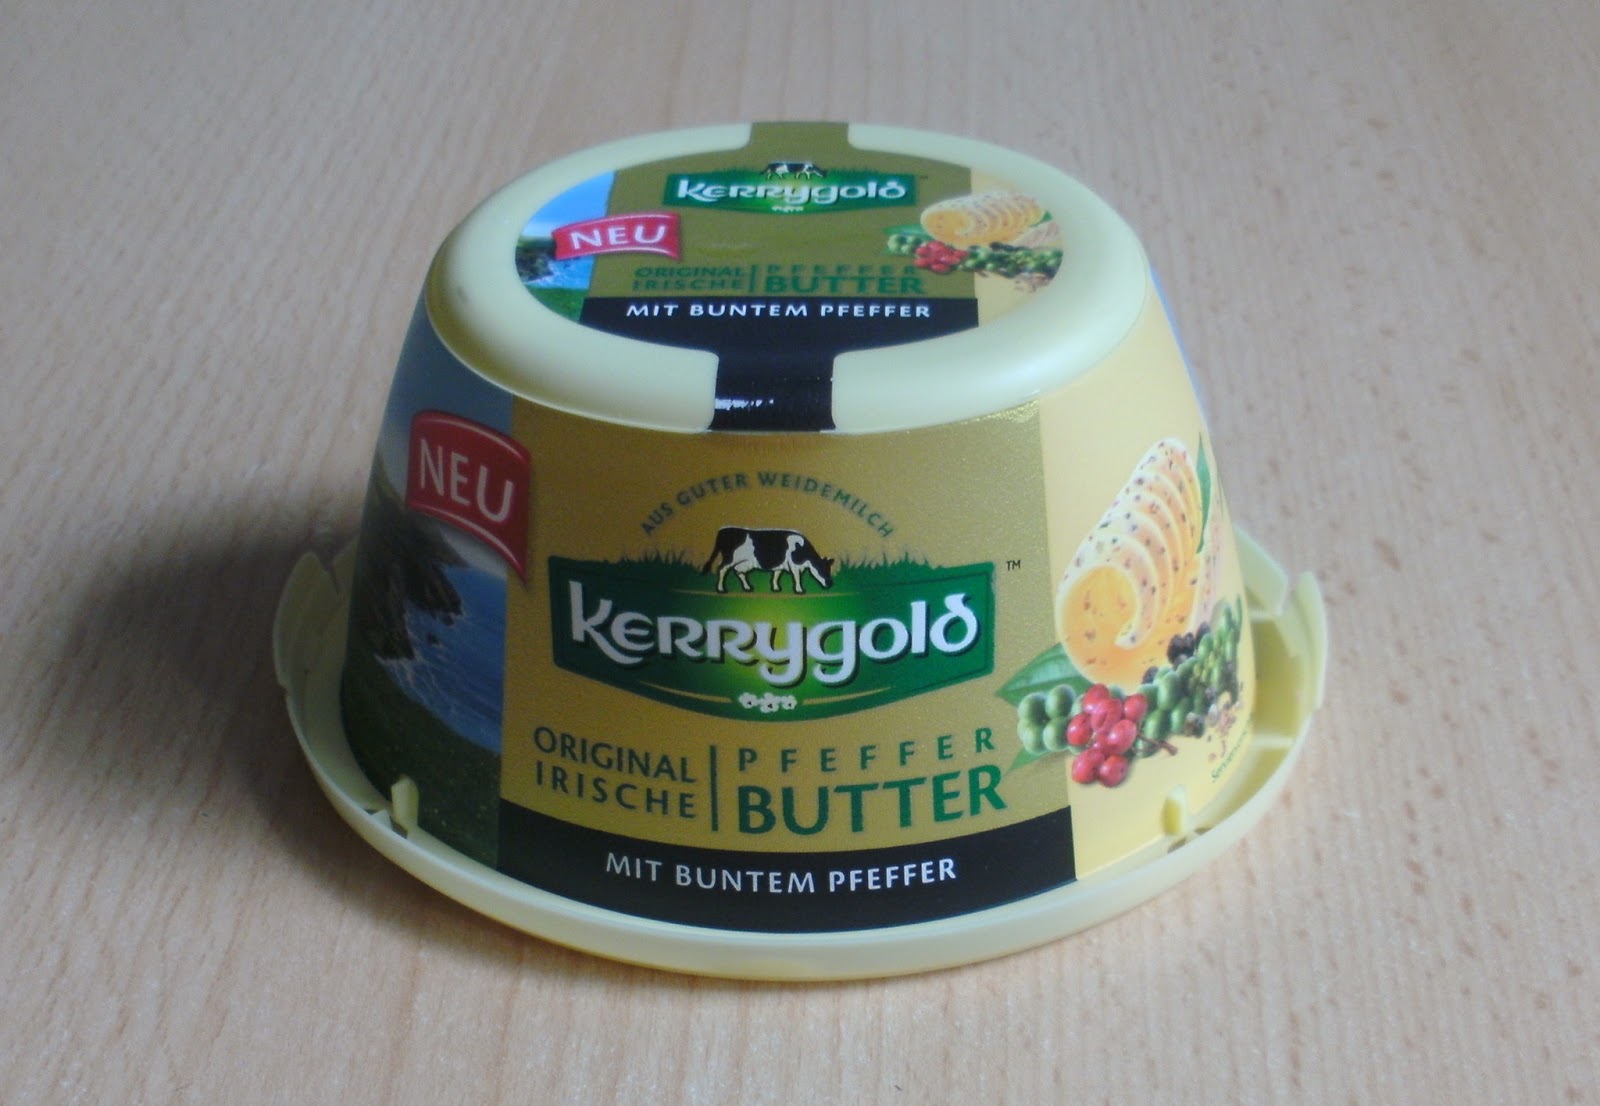 Kerrygold Original Irische Pfeffer-Butter | Warentests praxisnah